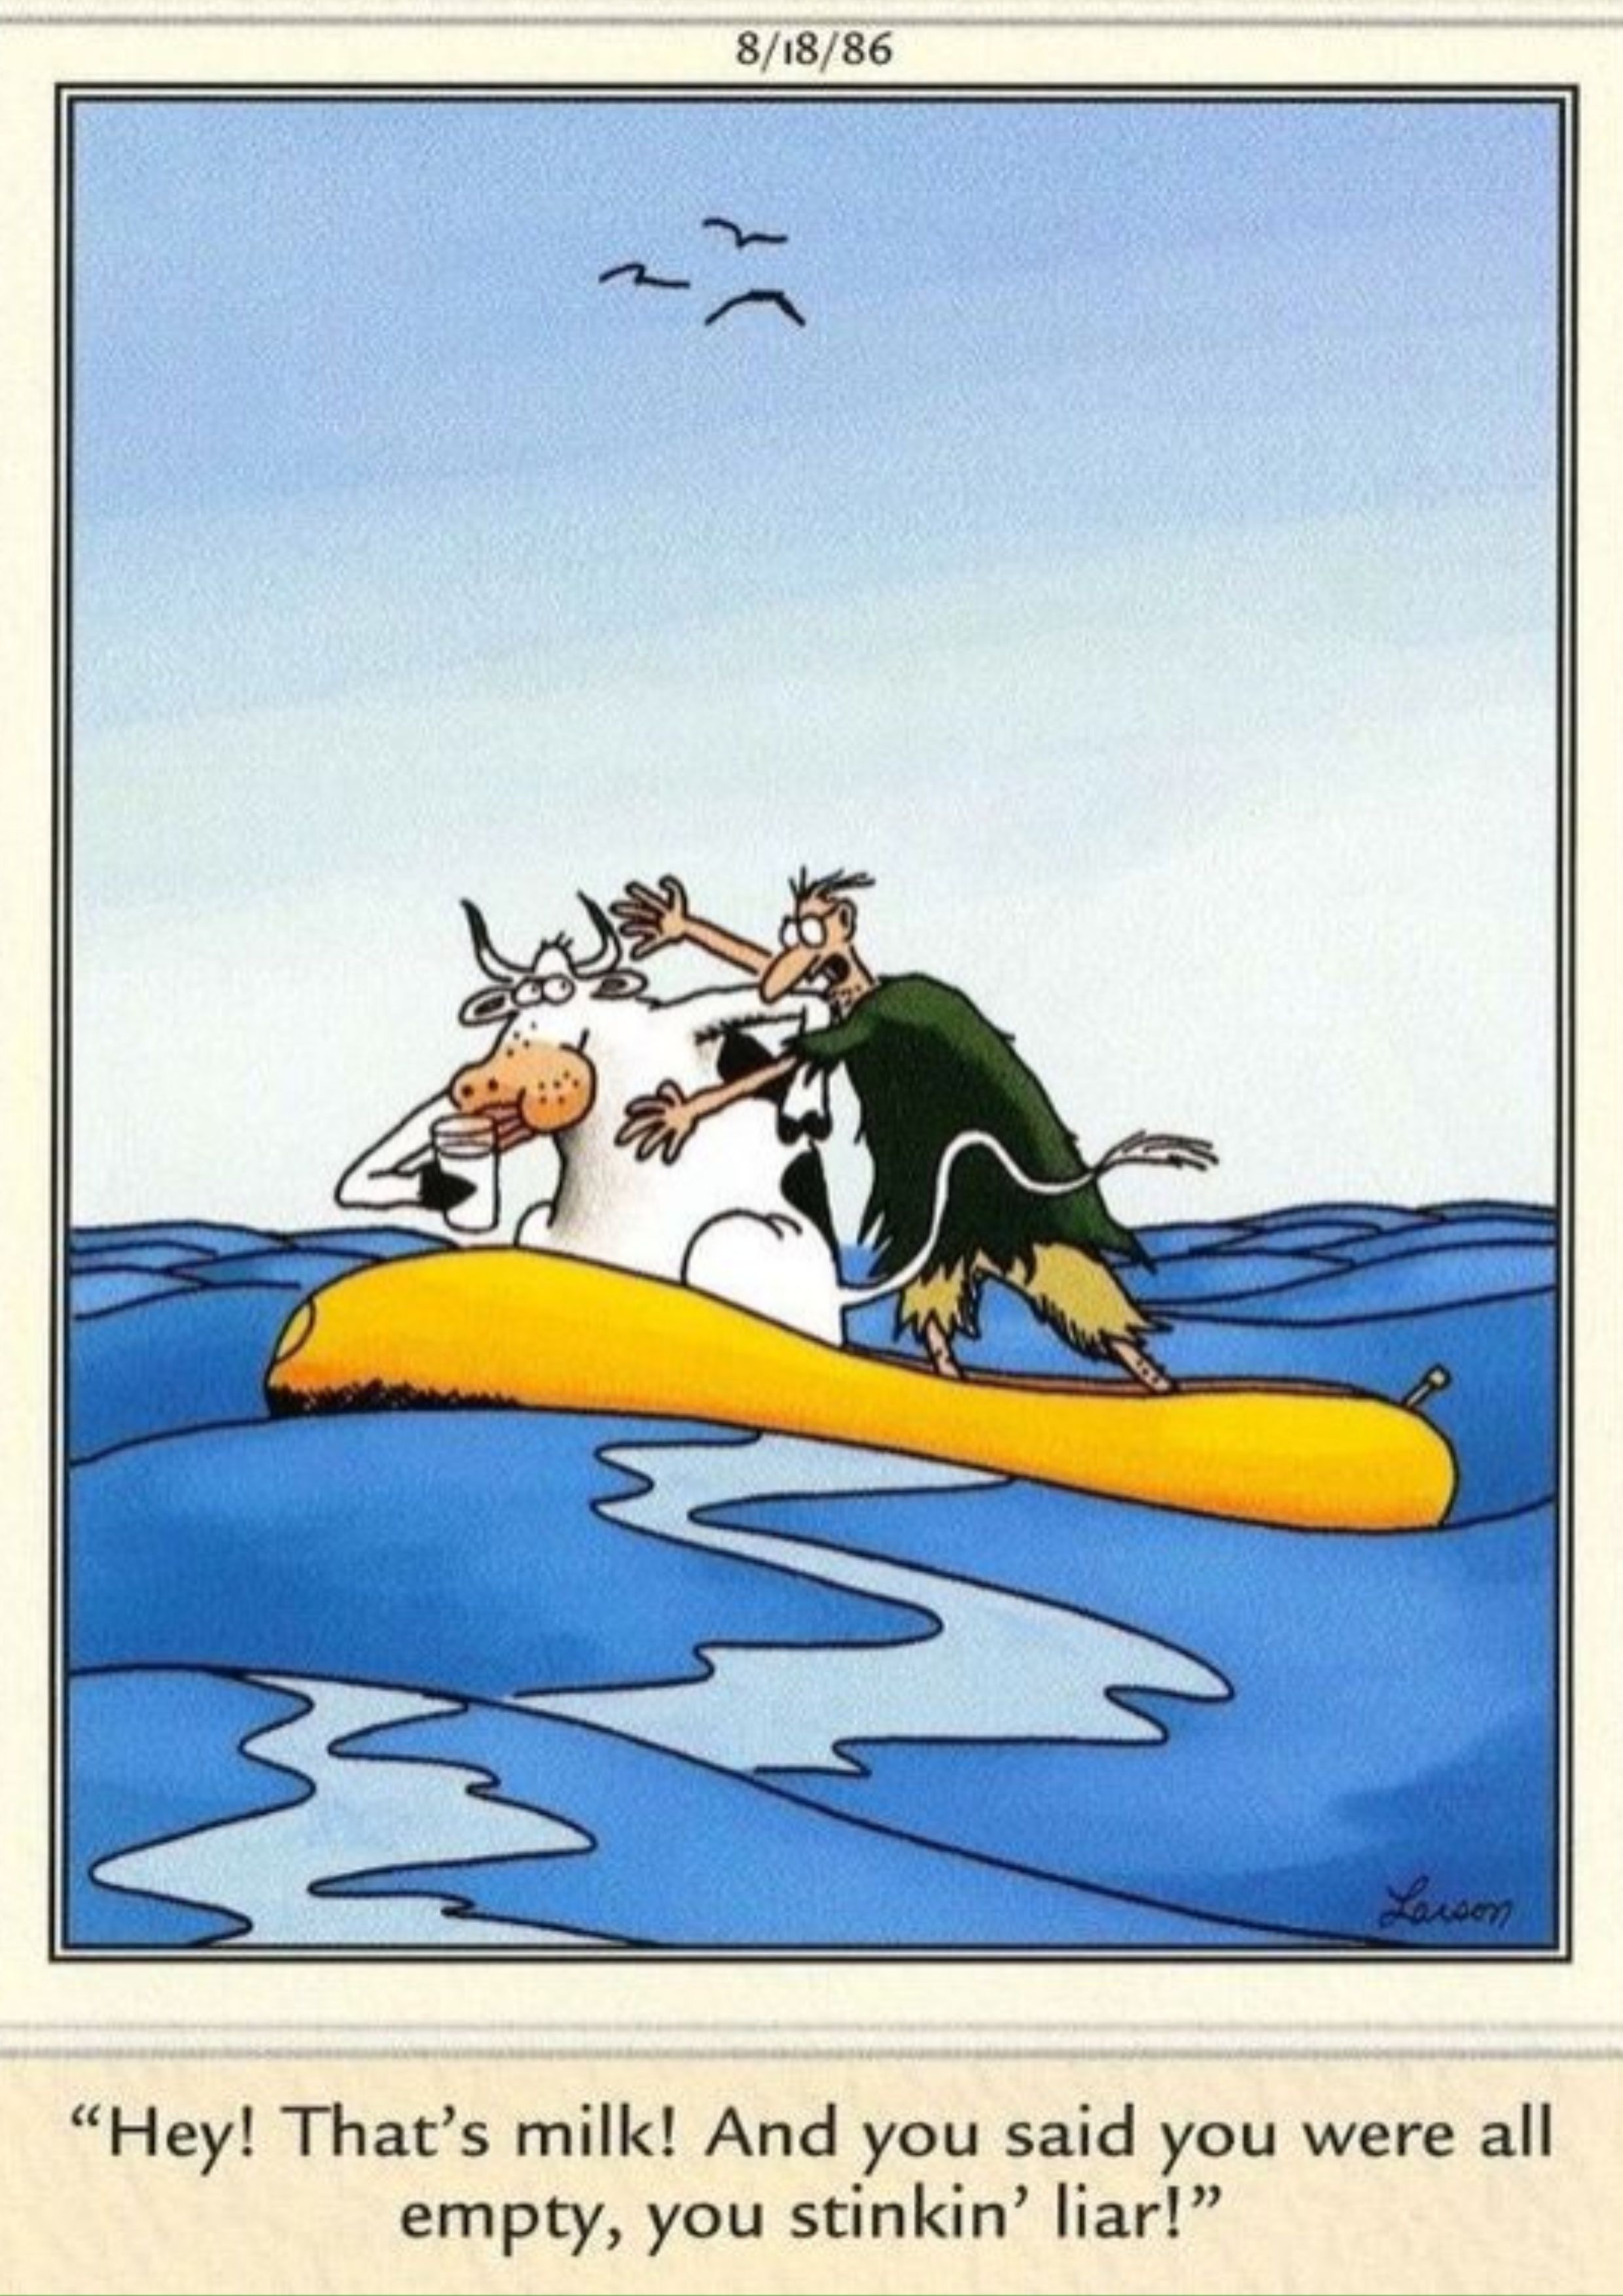 Vaca y hombre peleando en una balsa varada en el mar en Far Side.